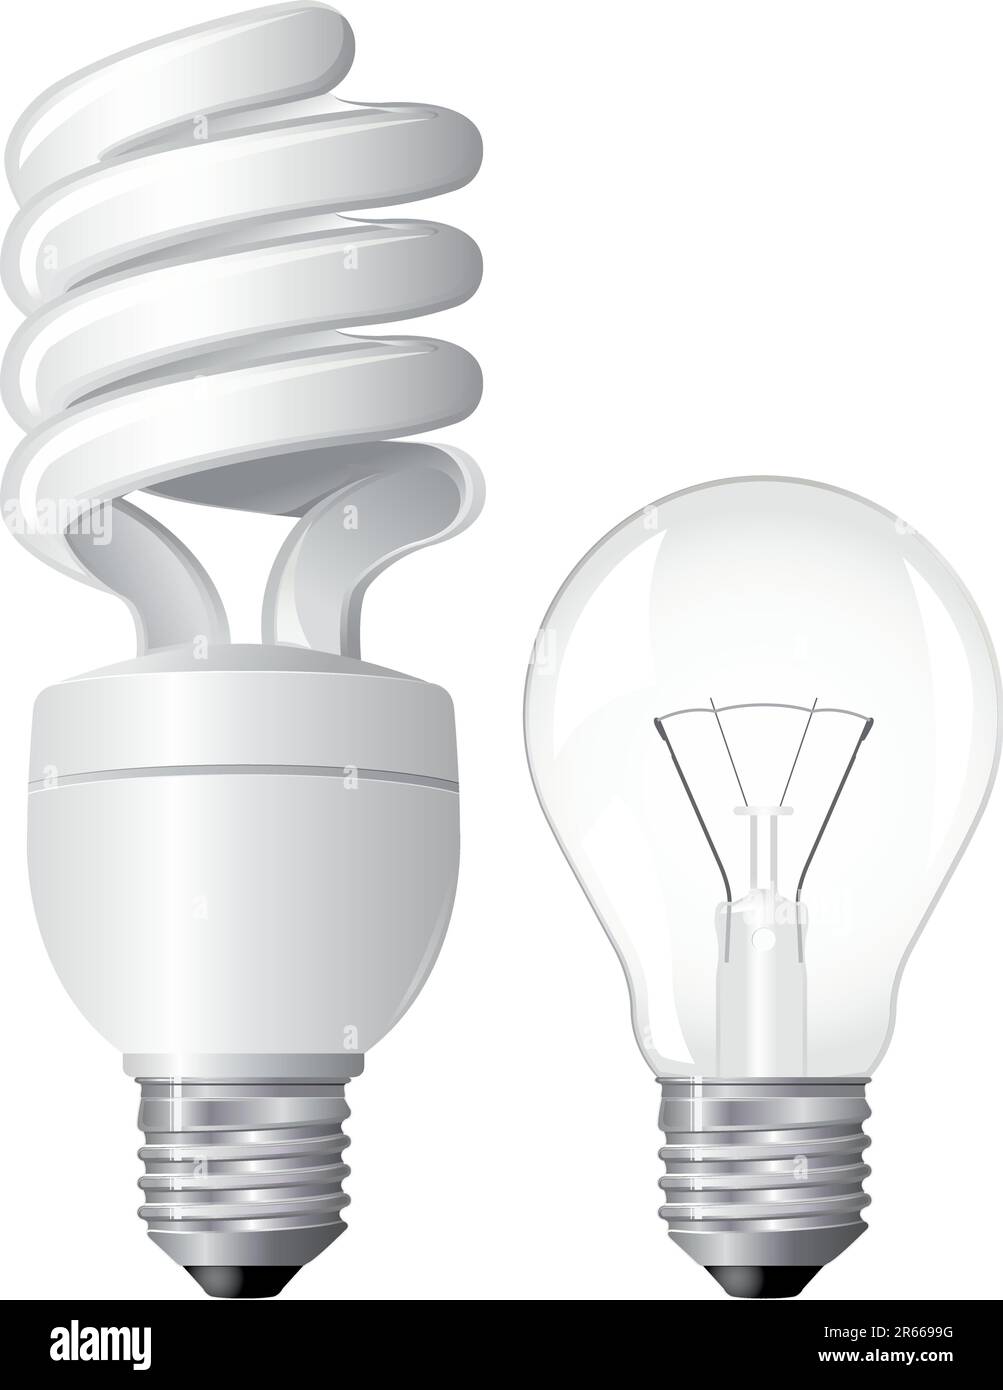 Ampoule fluorescente compacte efficace Illustration de Vecteur